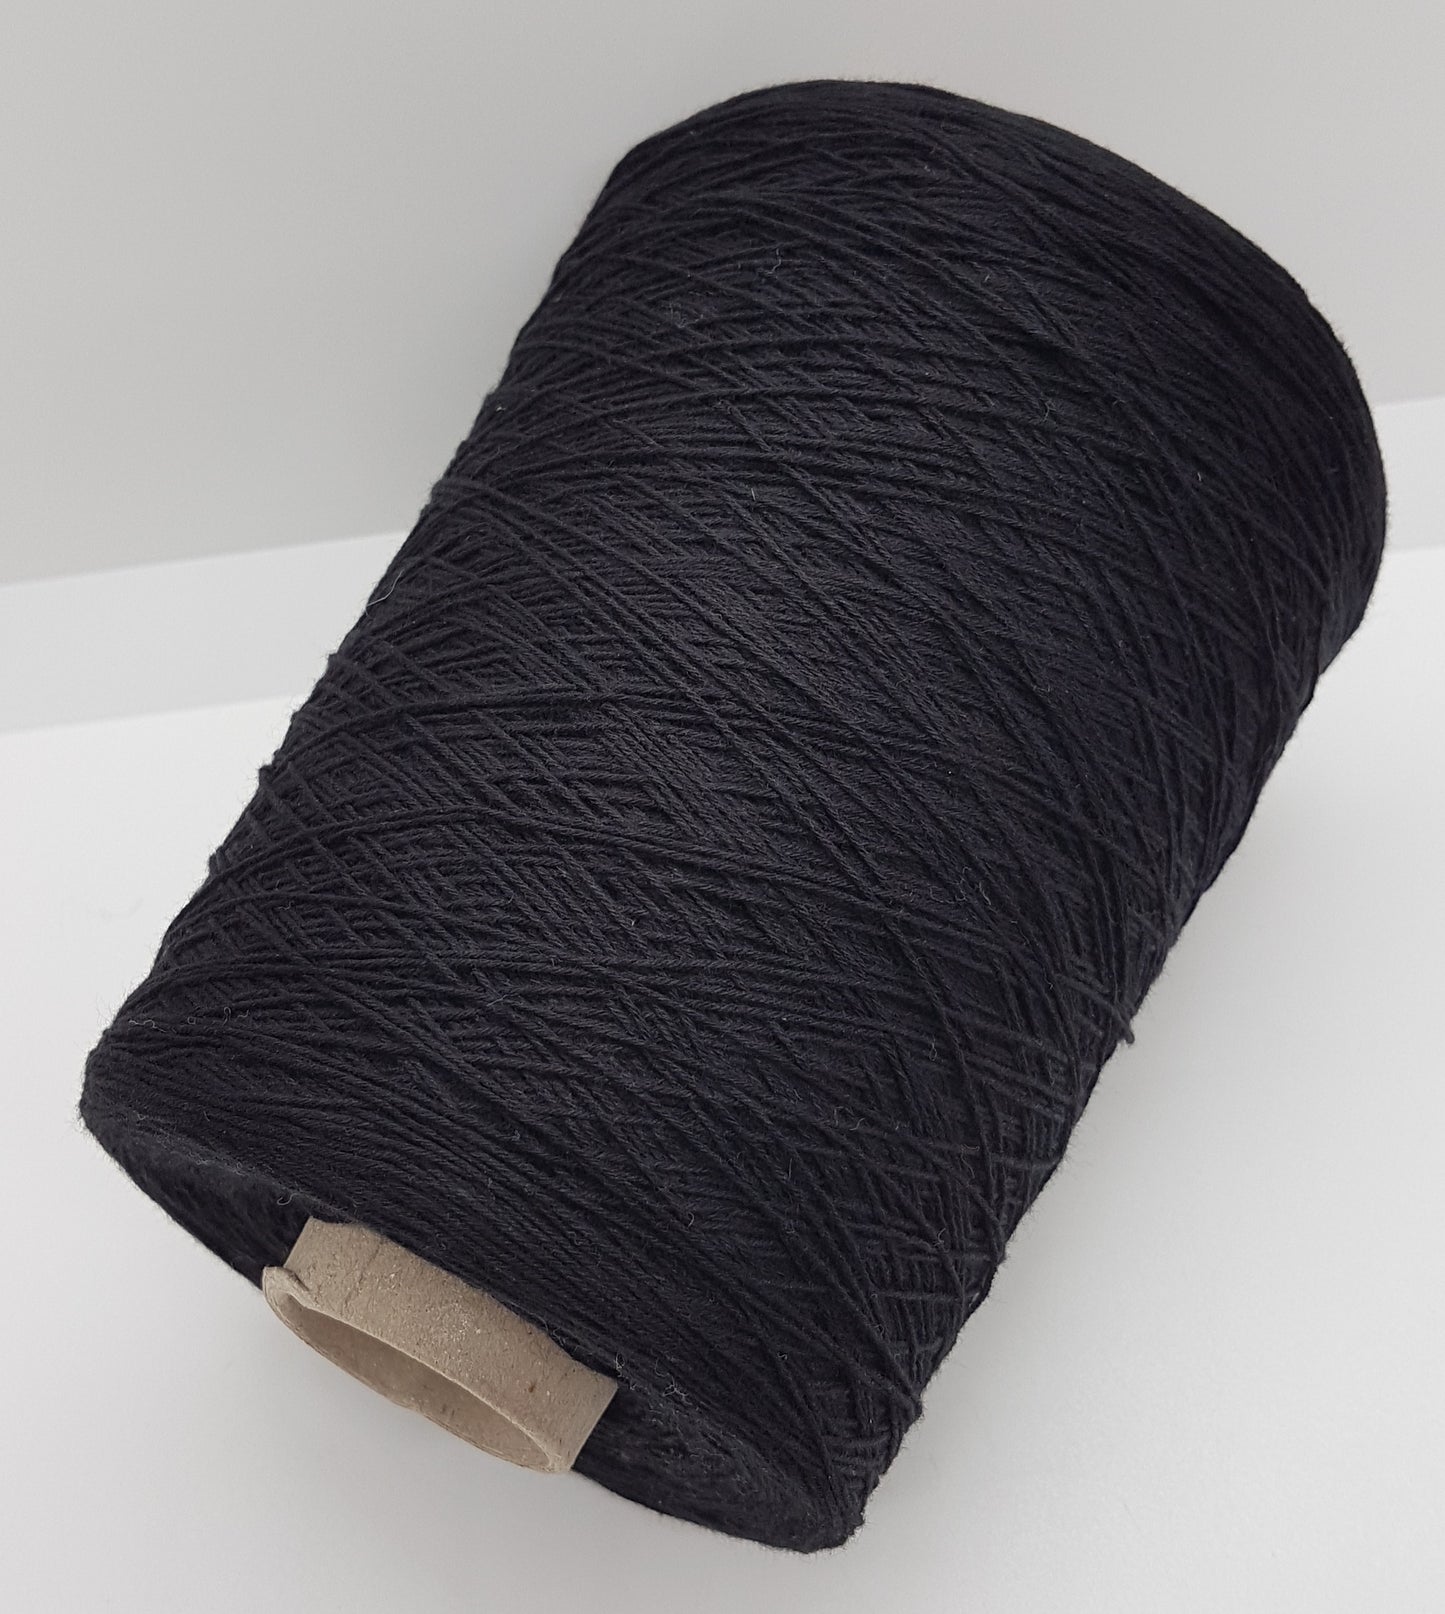 360G-440g 100% Baumwoll italienische Garn schwarz Farbe N.334